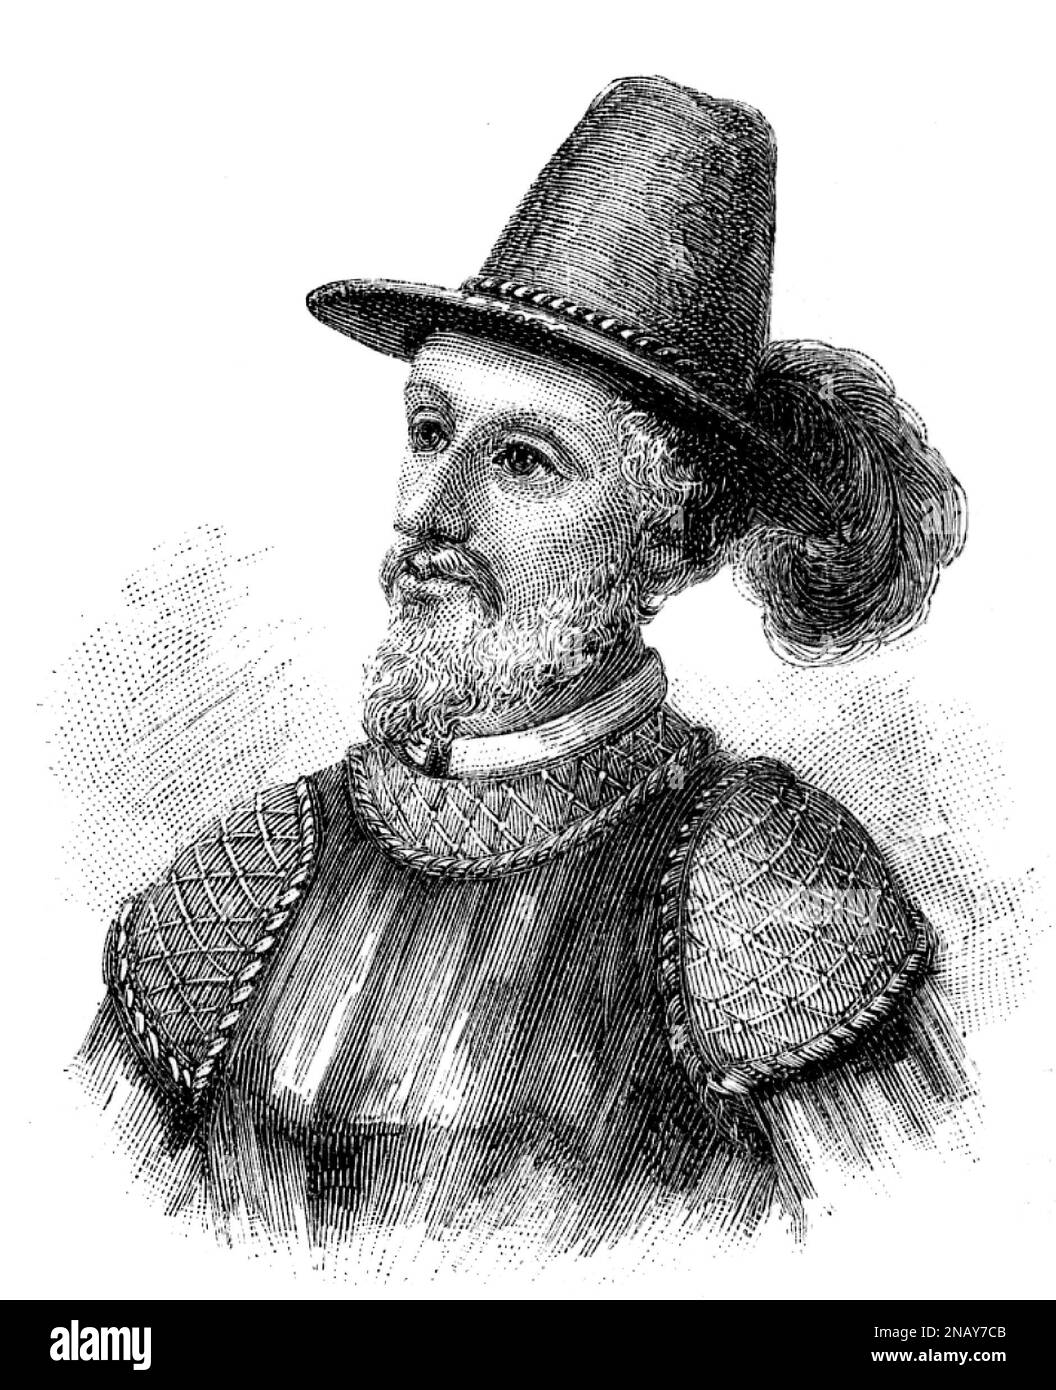 Ponce de Leon. Portrait of the Spanish explorer and conquistador, Juan Ponce de León (1474-1521), engraving Stock Photo